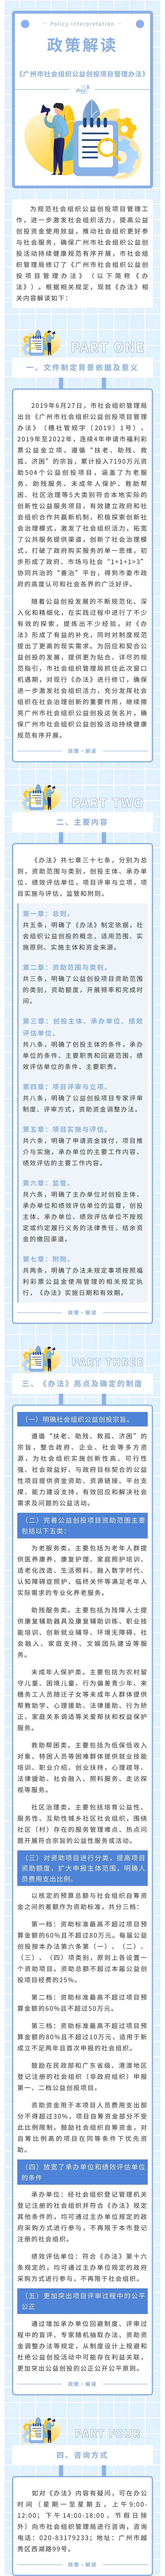 【一图读懂】关于《广州市社会组织公益创投项目管理办法》的政策解读.jpg